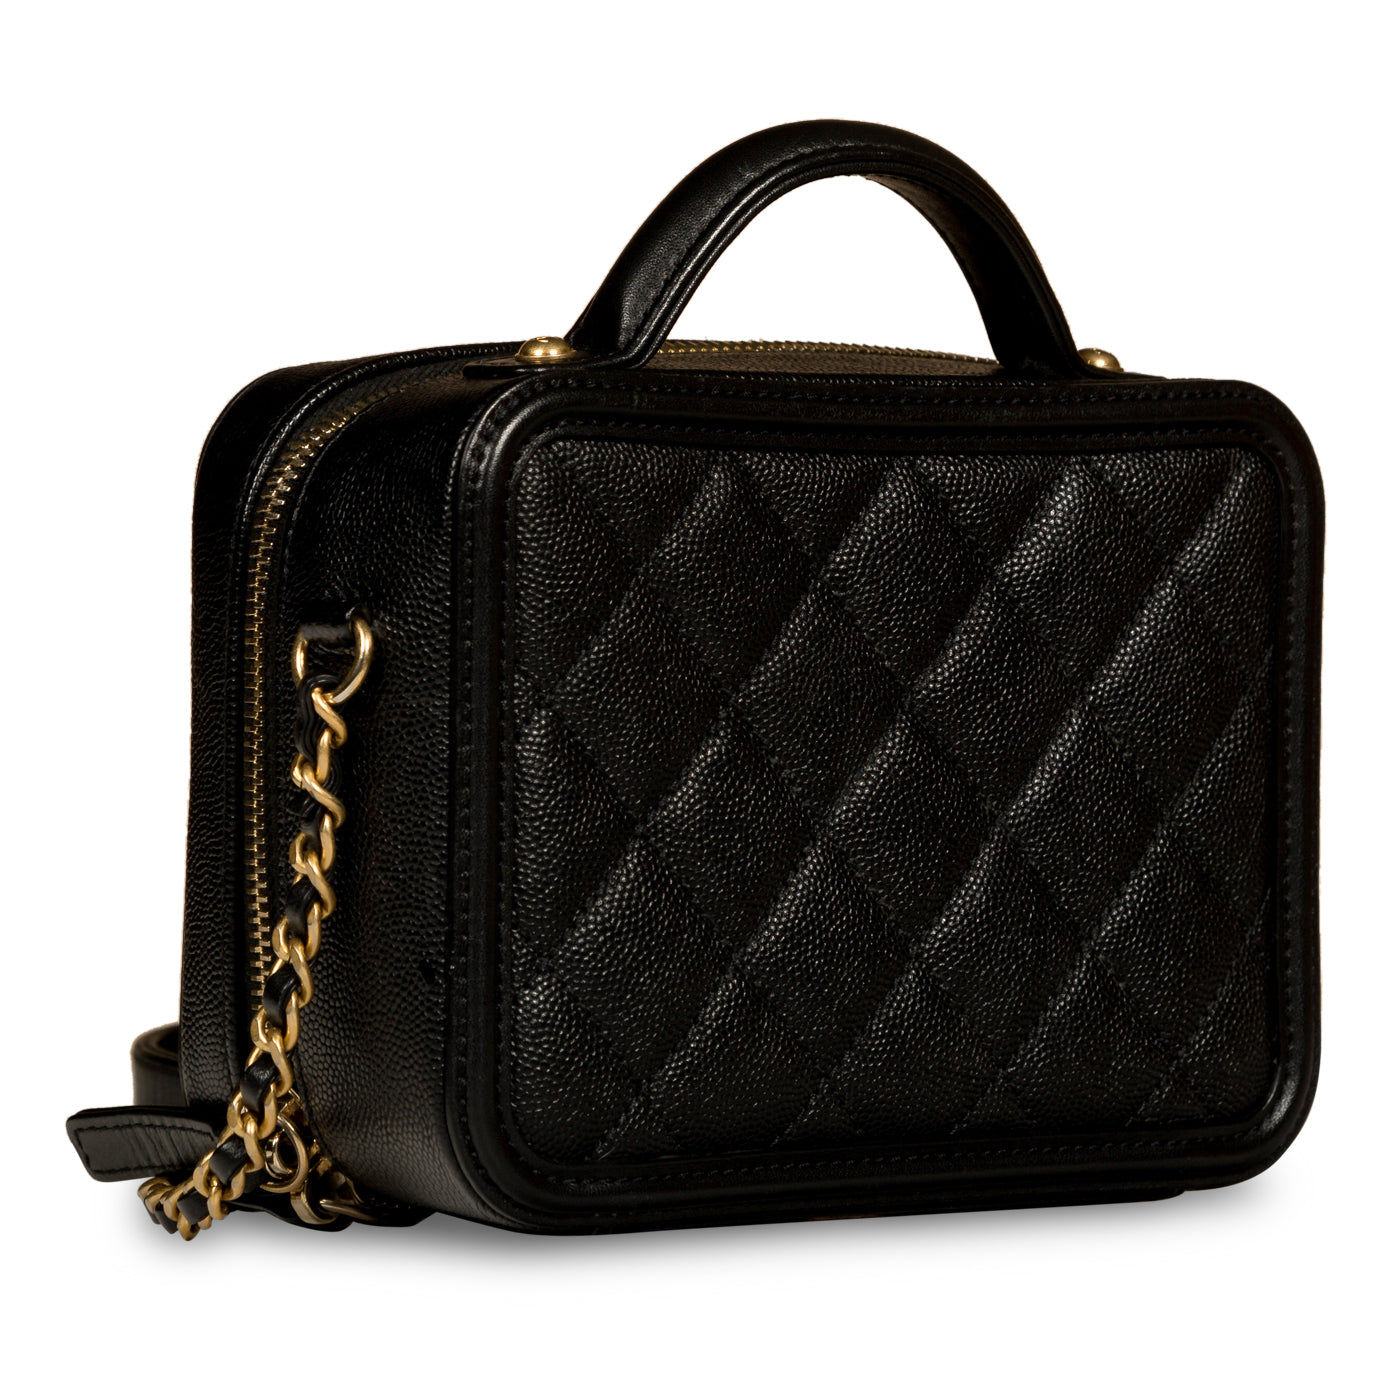 Chanel - Mini Filigree CC Vanity Case - Black Caviar - Pre-Loved